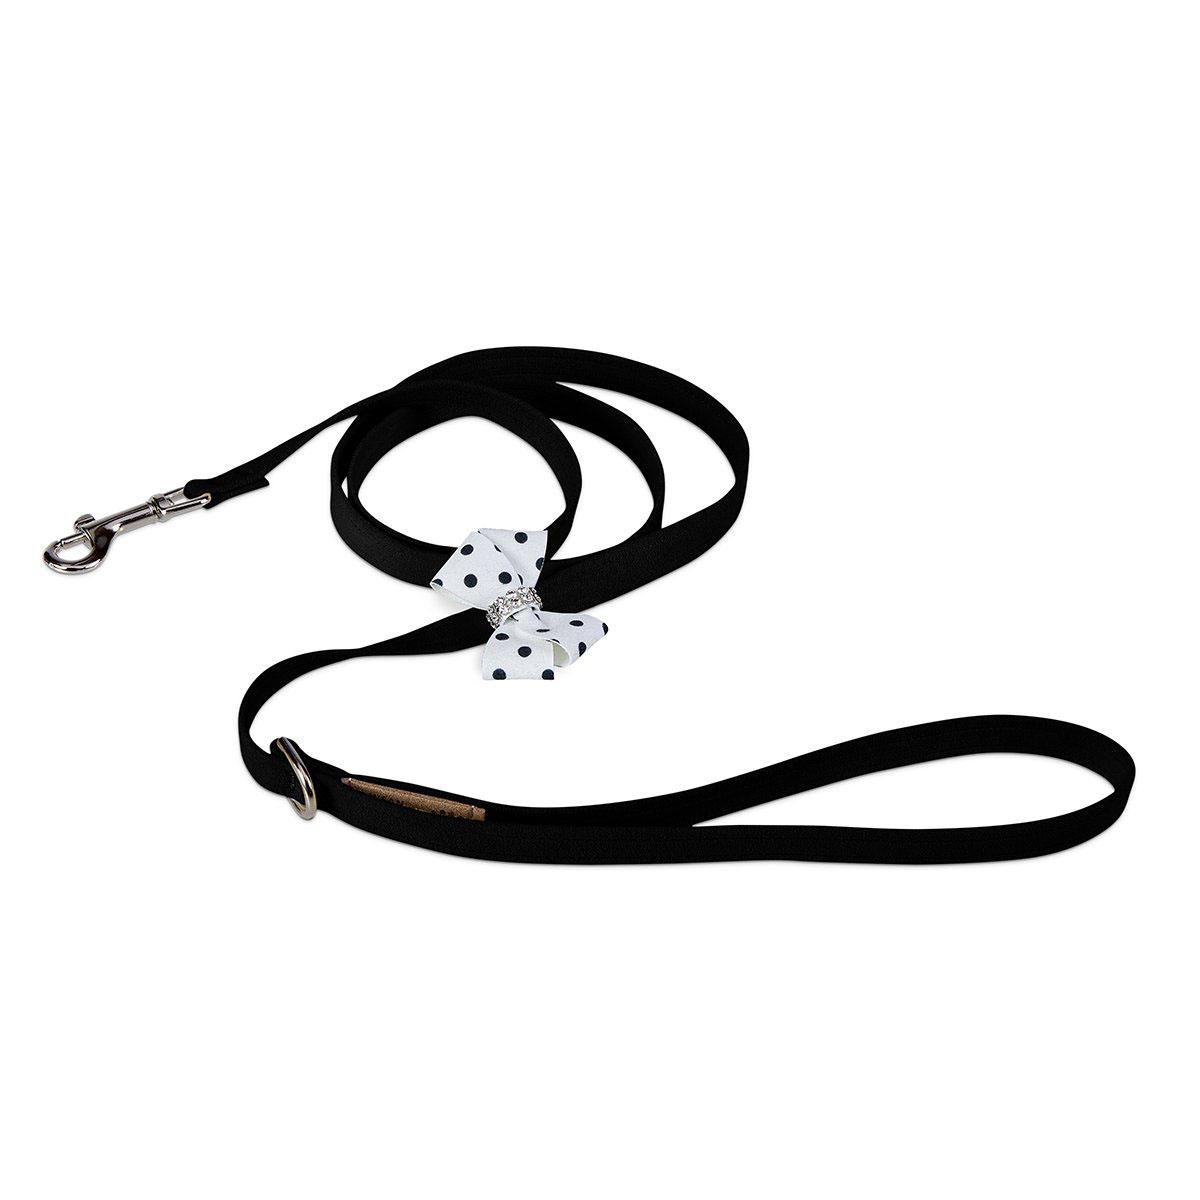 Susan Lanci Black & White Polka Dot Nouveau Bow Dog Leash - Black